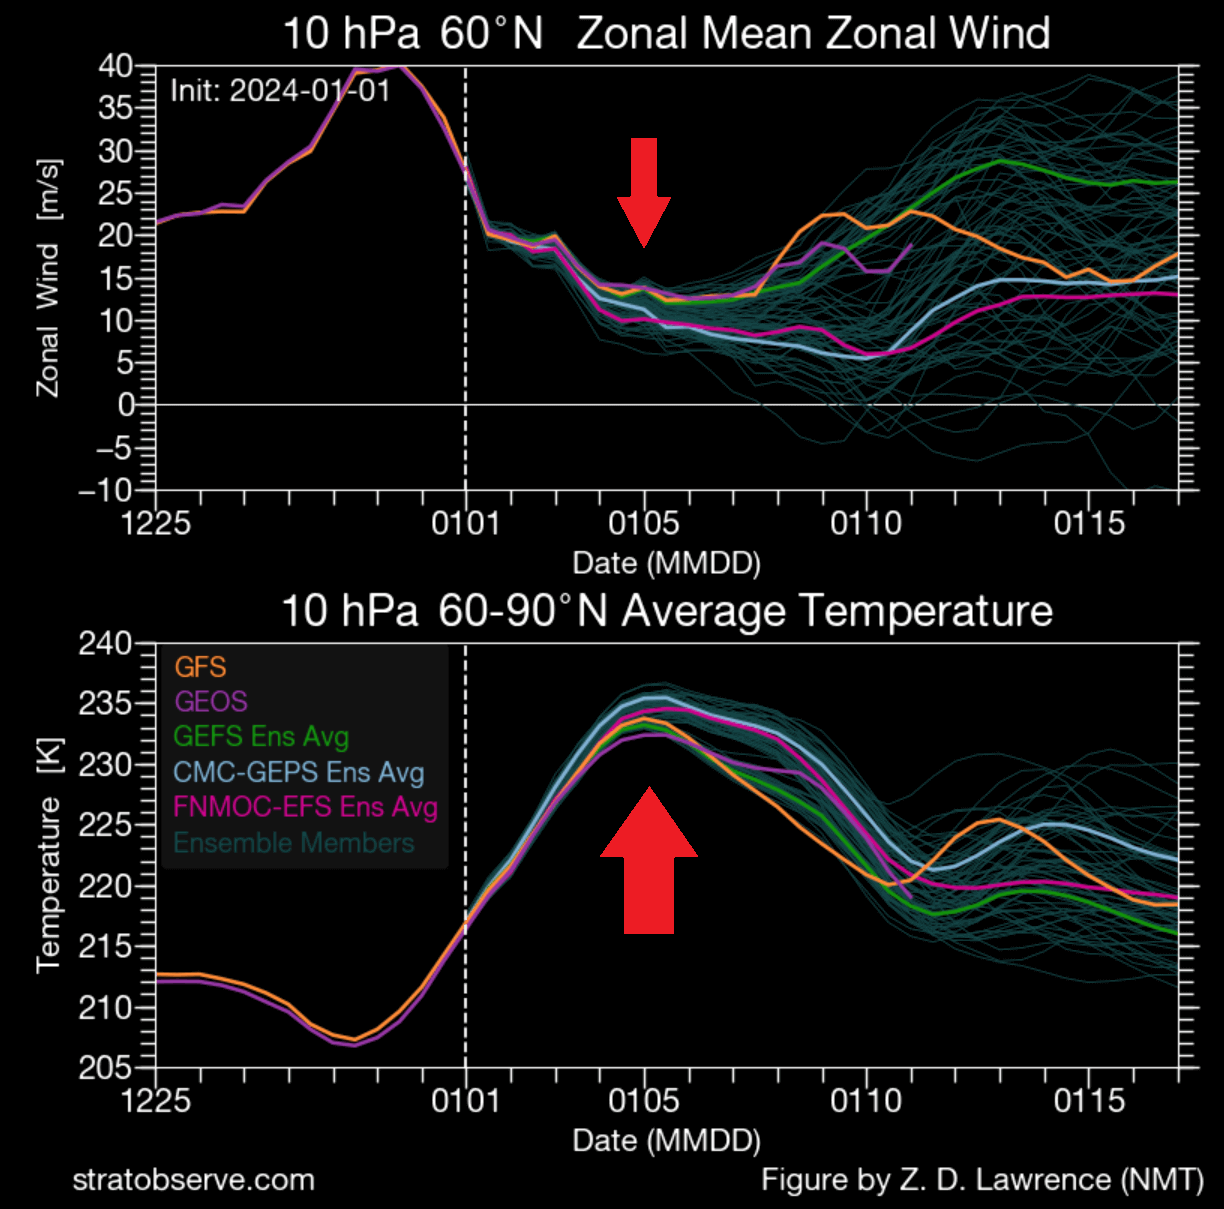 winter-polar-vortex-wind-speed-ensemble-temperature-forecast-stratospheric-warming-event-2024